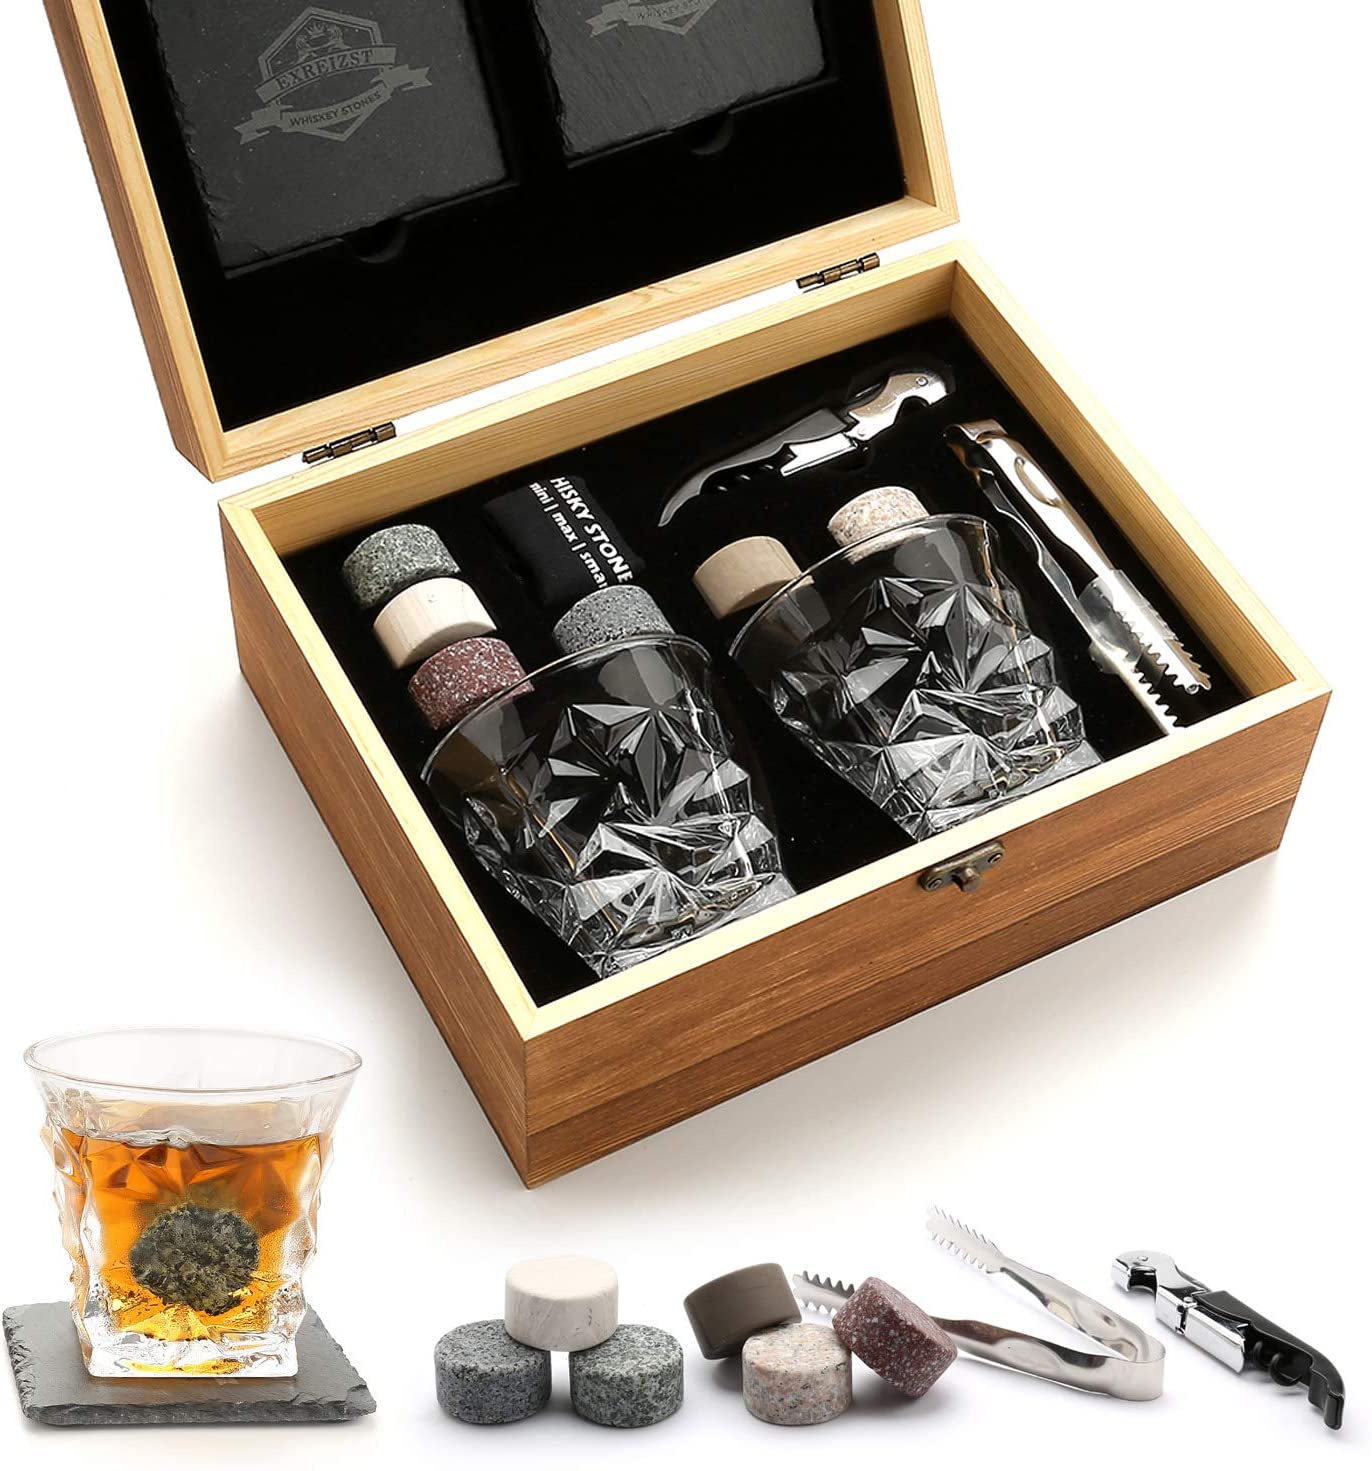 Trending ProductsTwist Whiskey Glass - Whiskey Glass Set Granite Chilling Whiskey Rocks Scotch Bourbon Whiskey Glass Gift Box Set  – Shunstone